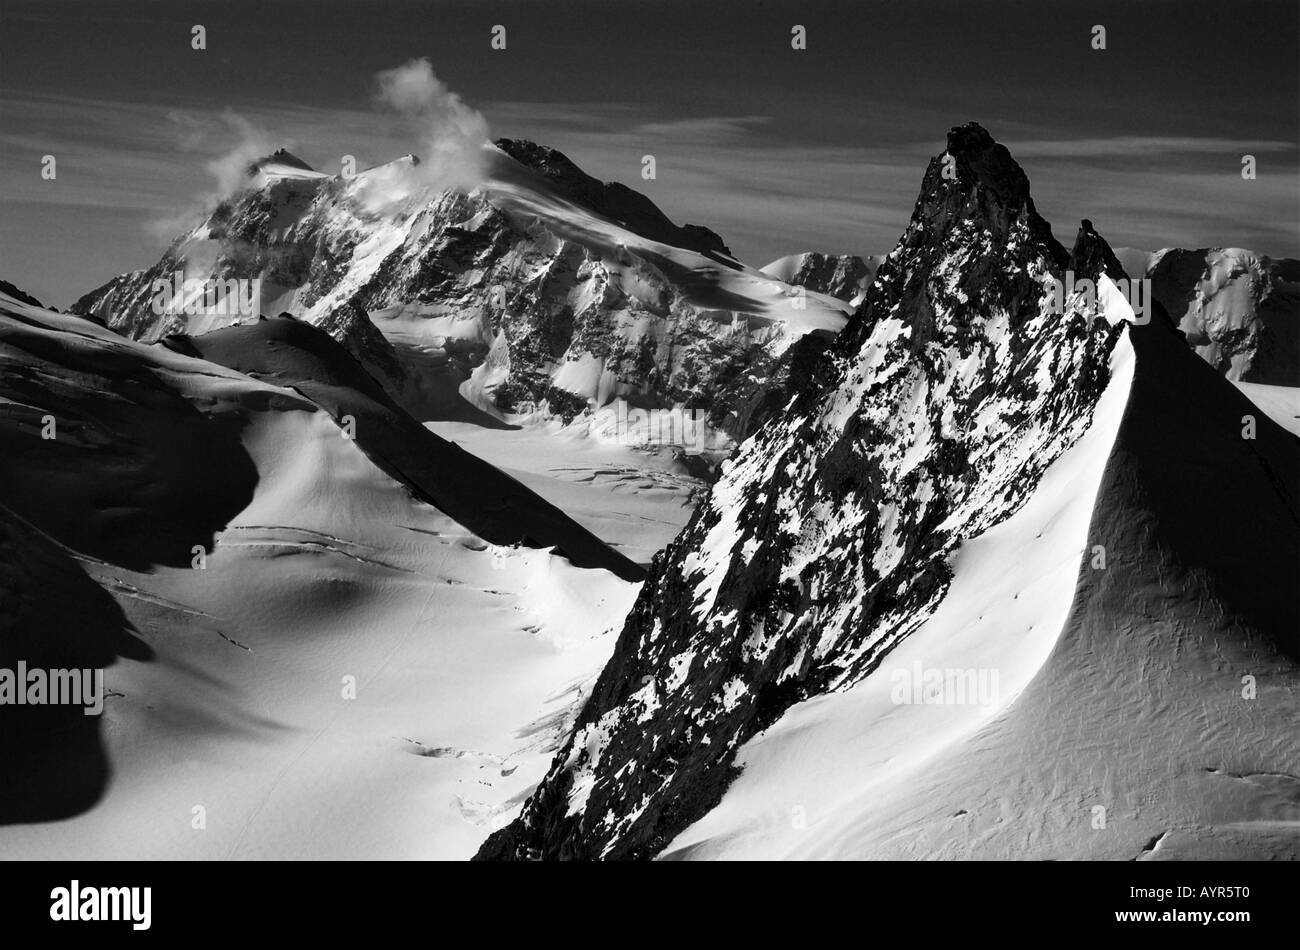 La cumbre del bloque Rimpfischorn y Monte Rosa, visto desde la parte superior de la Allalinhorn en los Alpes de Valais, Suiza Foto de stock